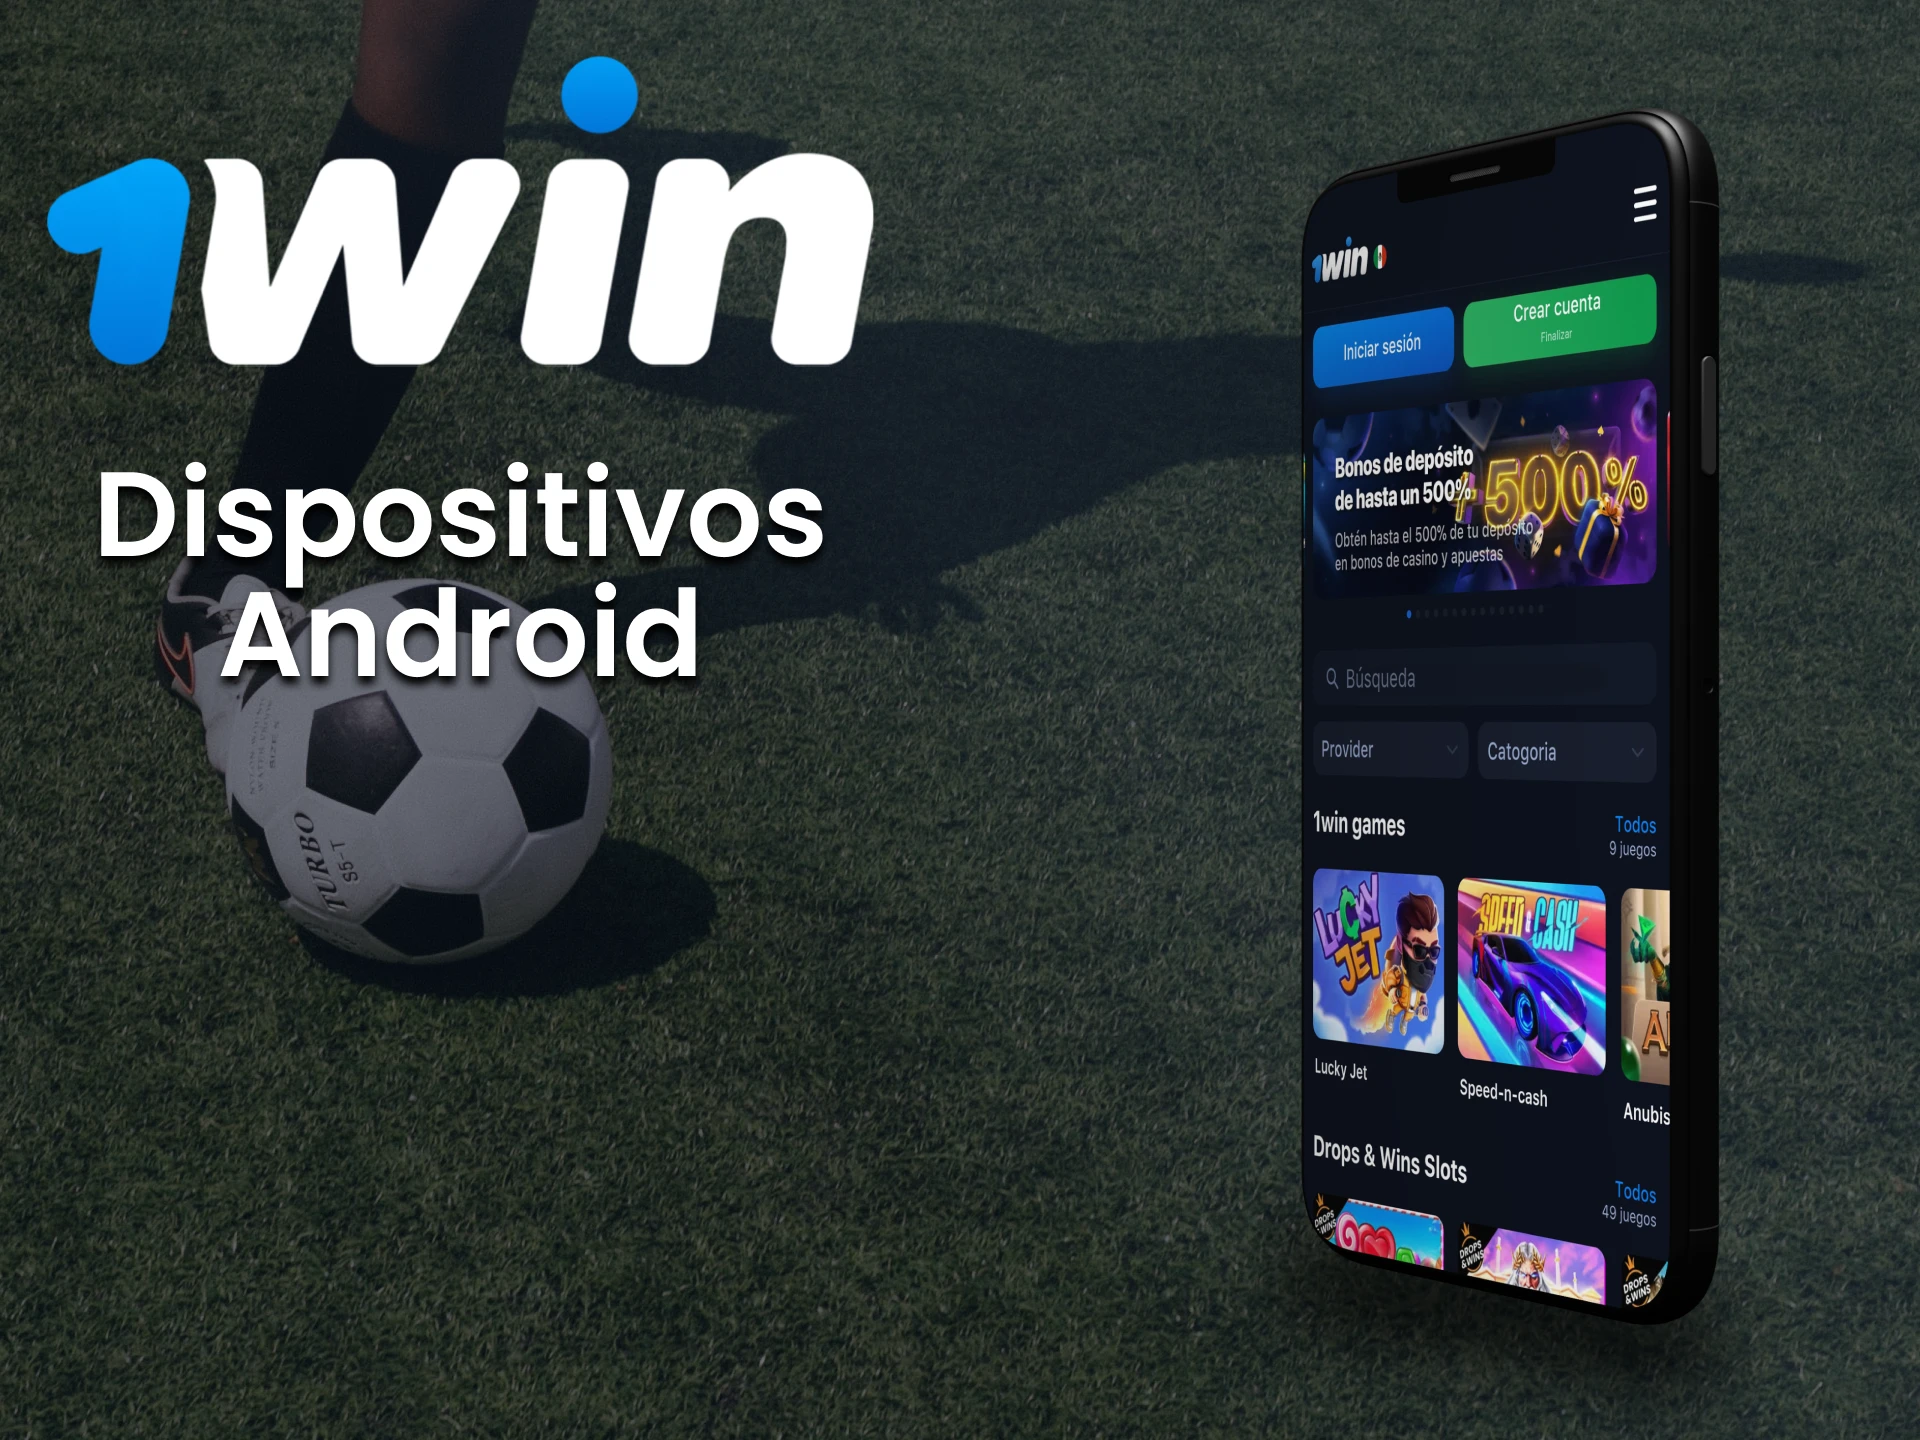 Dispositivos Android compatibles con la 1win app.